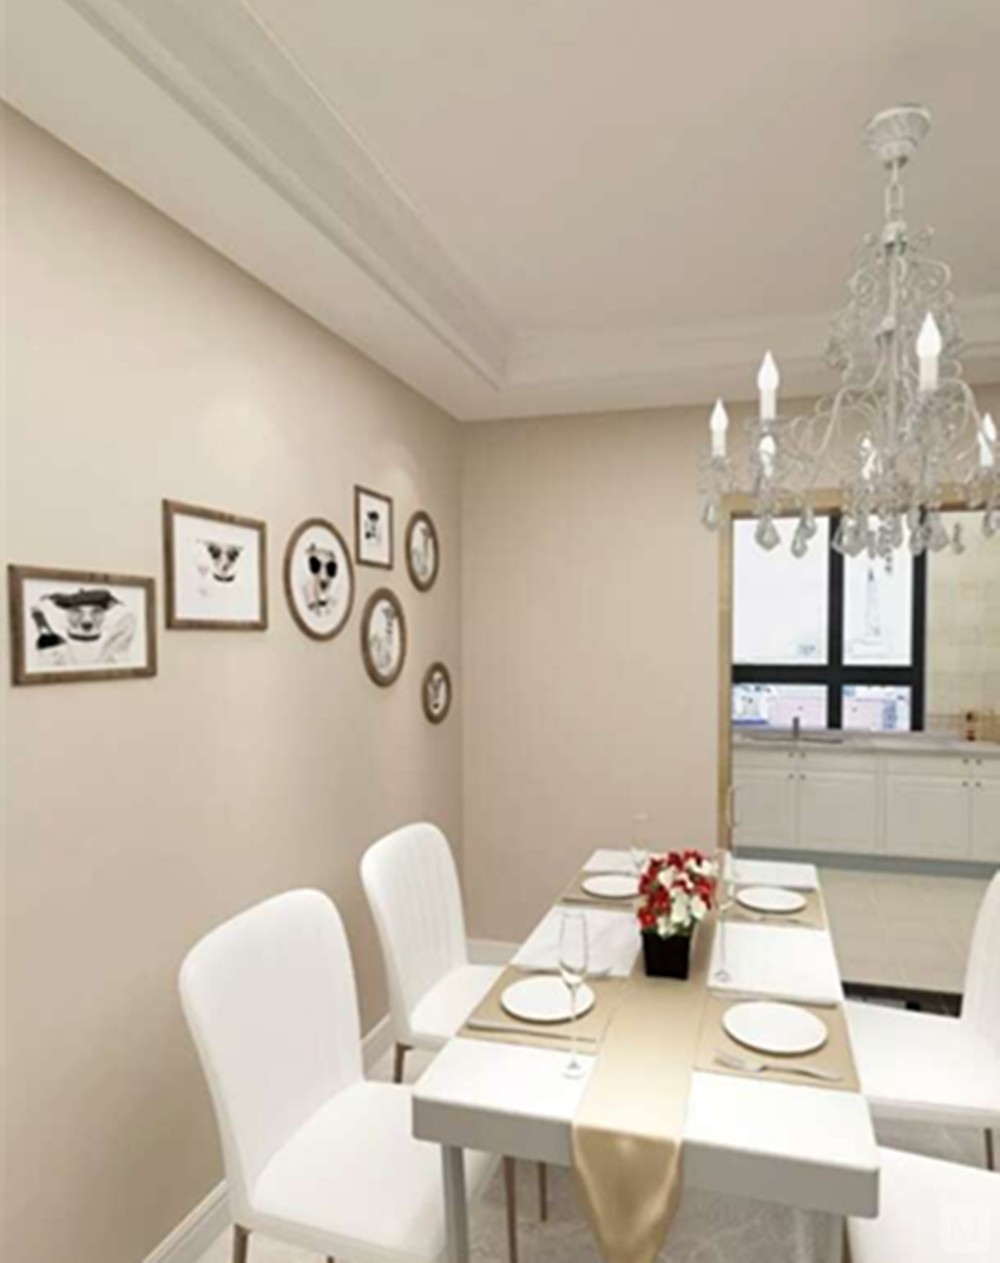 简欧风格是一种现代简约和欧式风格的结合,在家具的选择上,色调以象牙